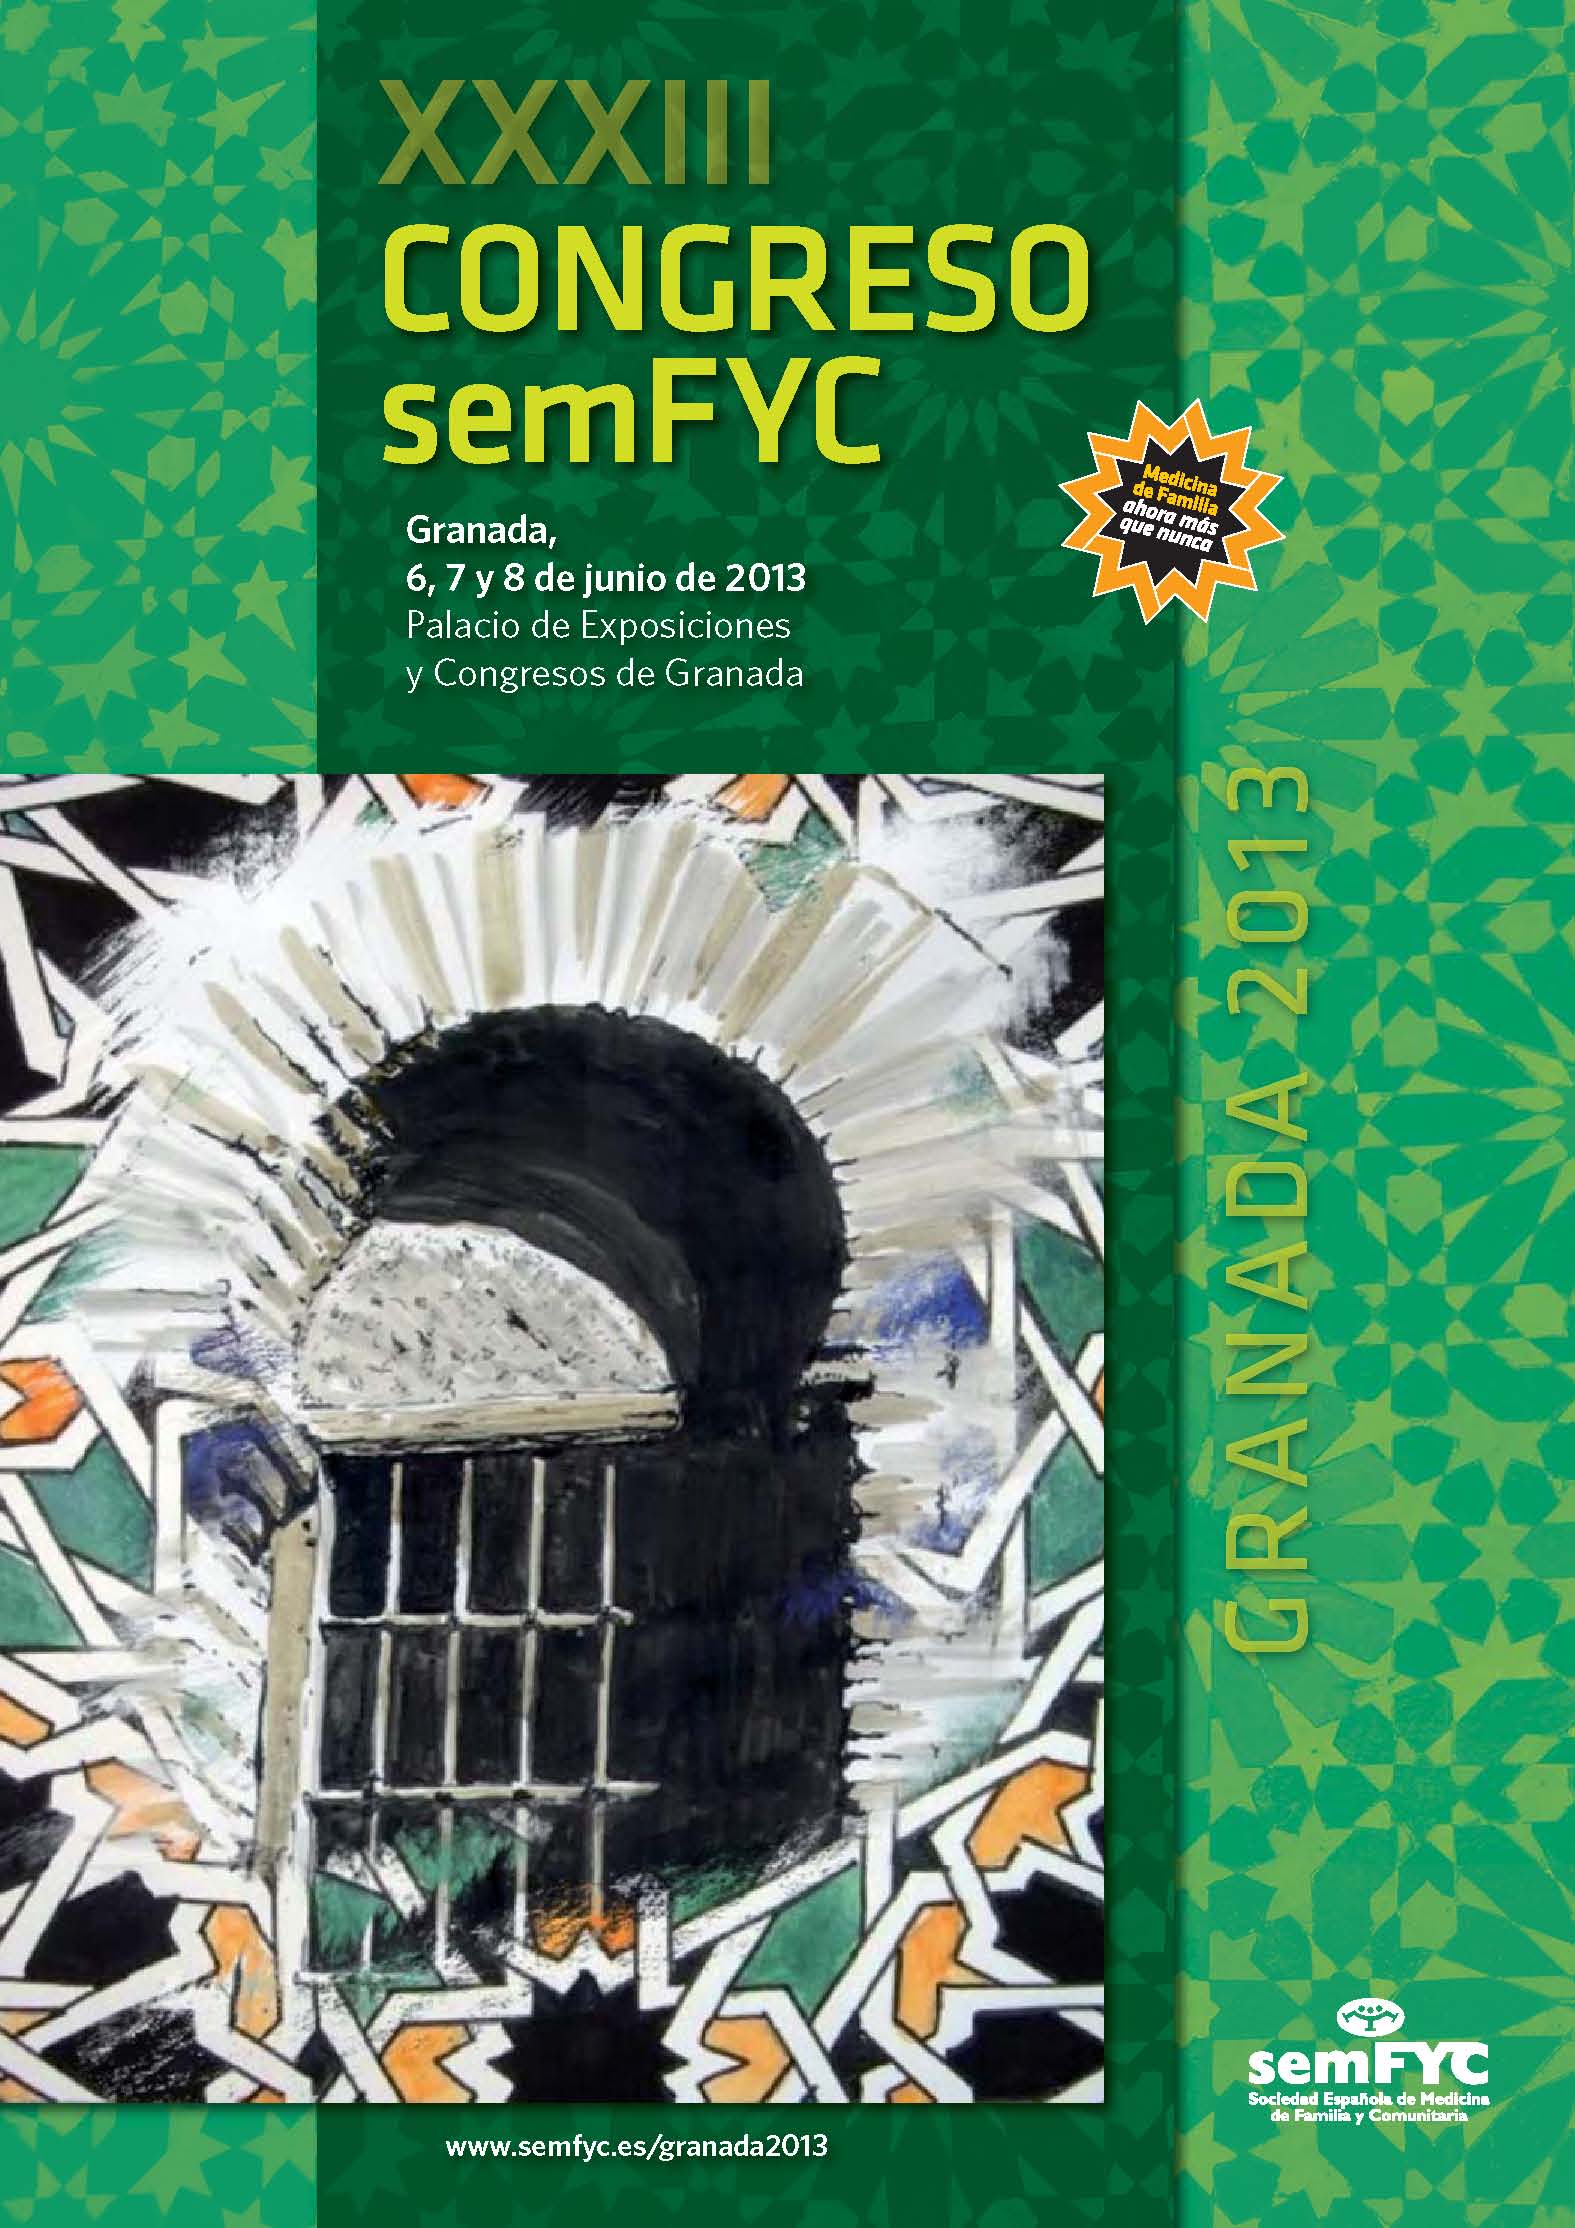 Esta semana se celebra el XXXIII Congreso de la semFYC en Granada